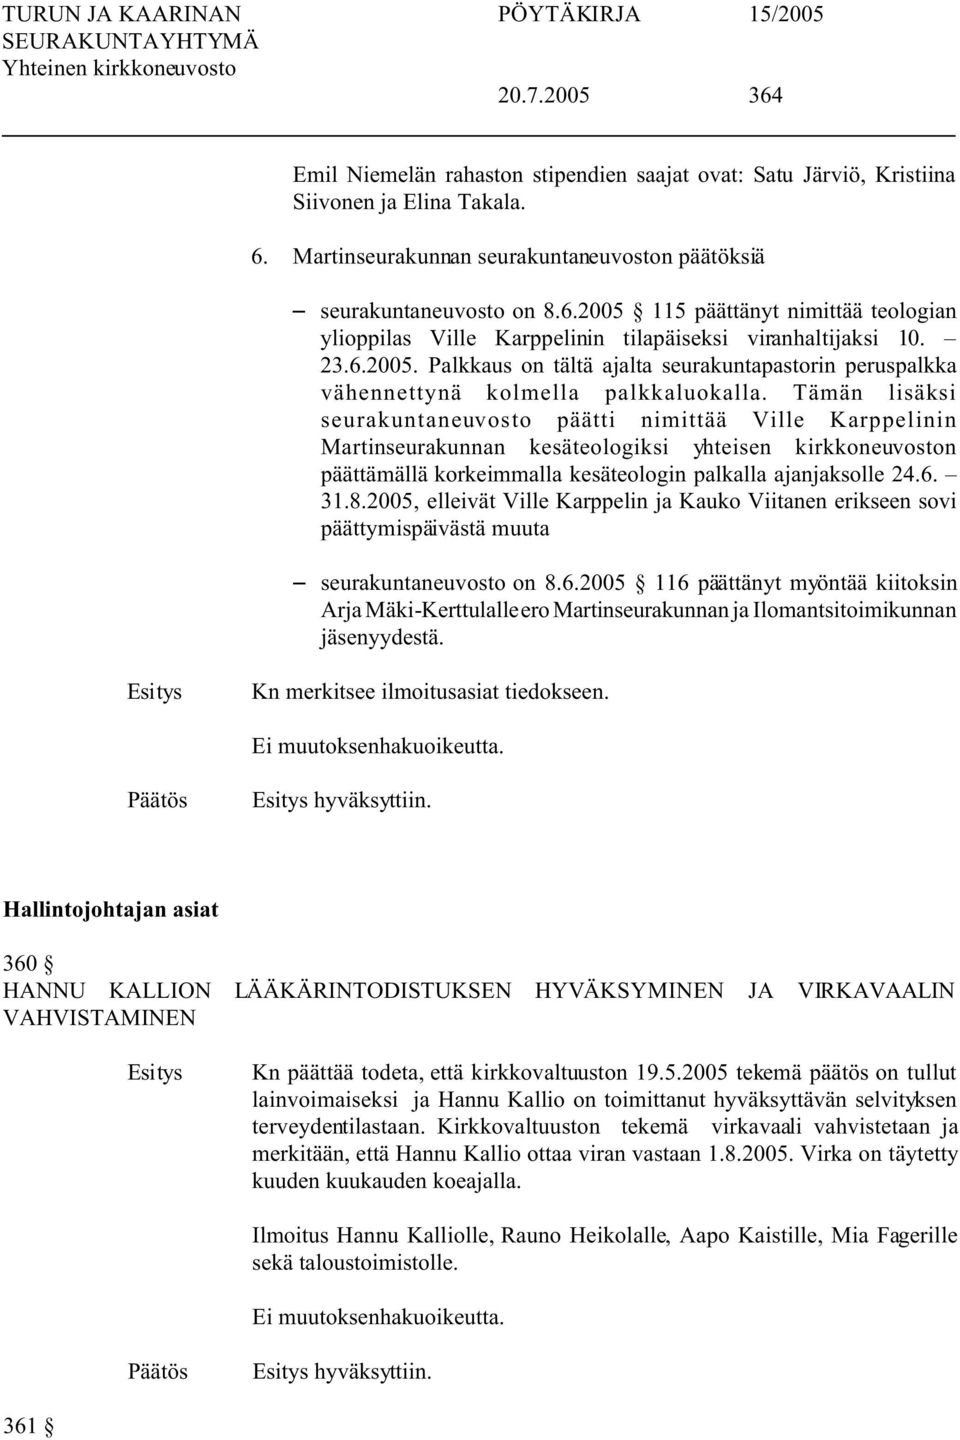 Tämän lisäksi seurakuntaneuvosto päätti nimittää Ville Karppelinin Martinseurakunnan kesäteologiksi yhteisen kirkkoneuvoston päättämällä korkeimmalla kesäteologin palkalla ajanjaksolle 24.6. 31.8.